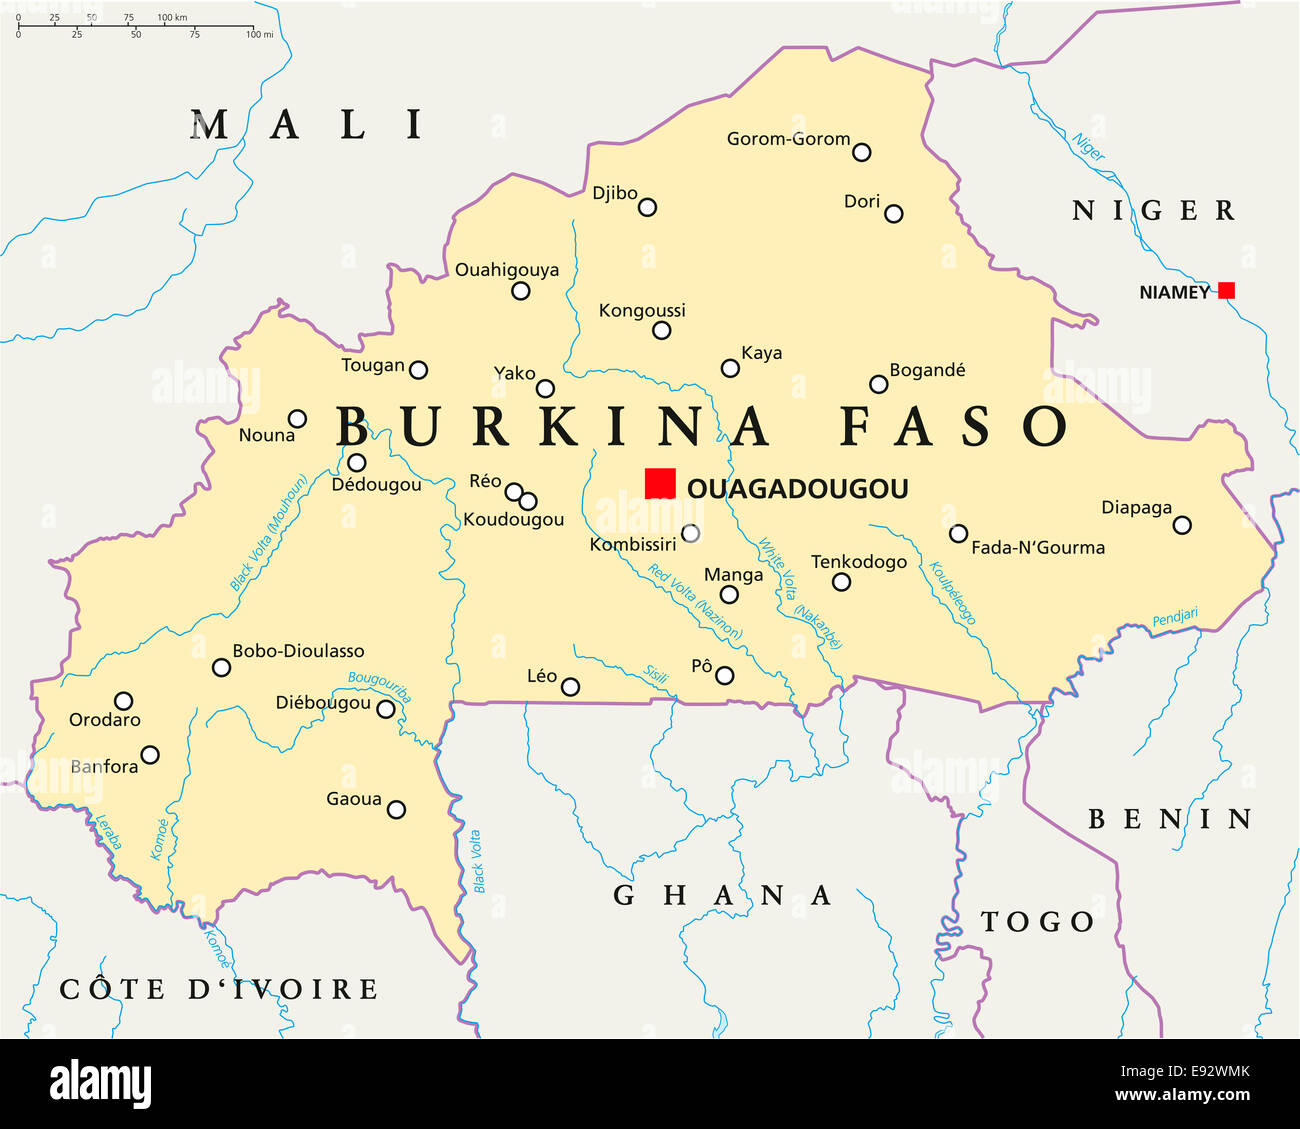 Carte Politique du Burkina Faso Ouagadougou, capitale des frontières nationales, la plupart des grandes villes, rivières et lacs. L'étiquetage en anglais Banque D'Images